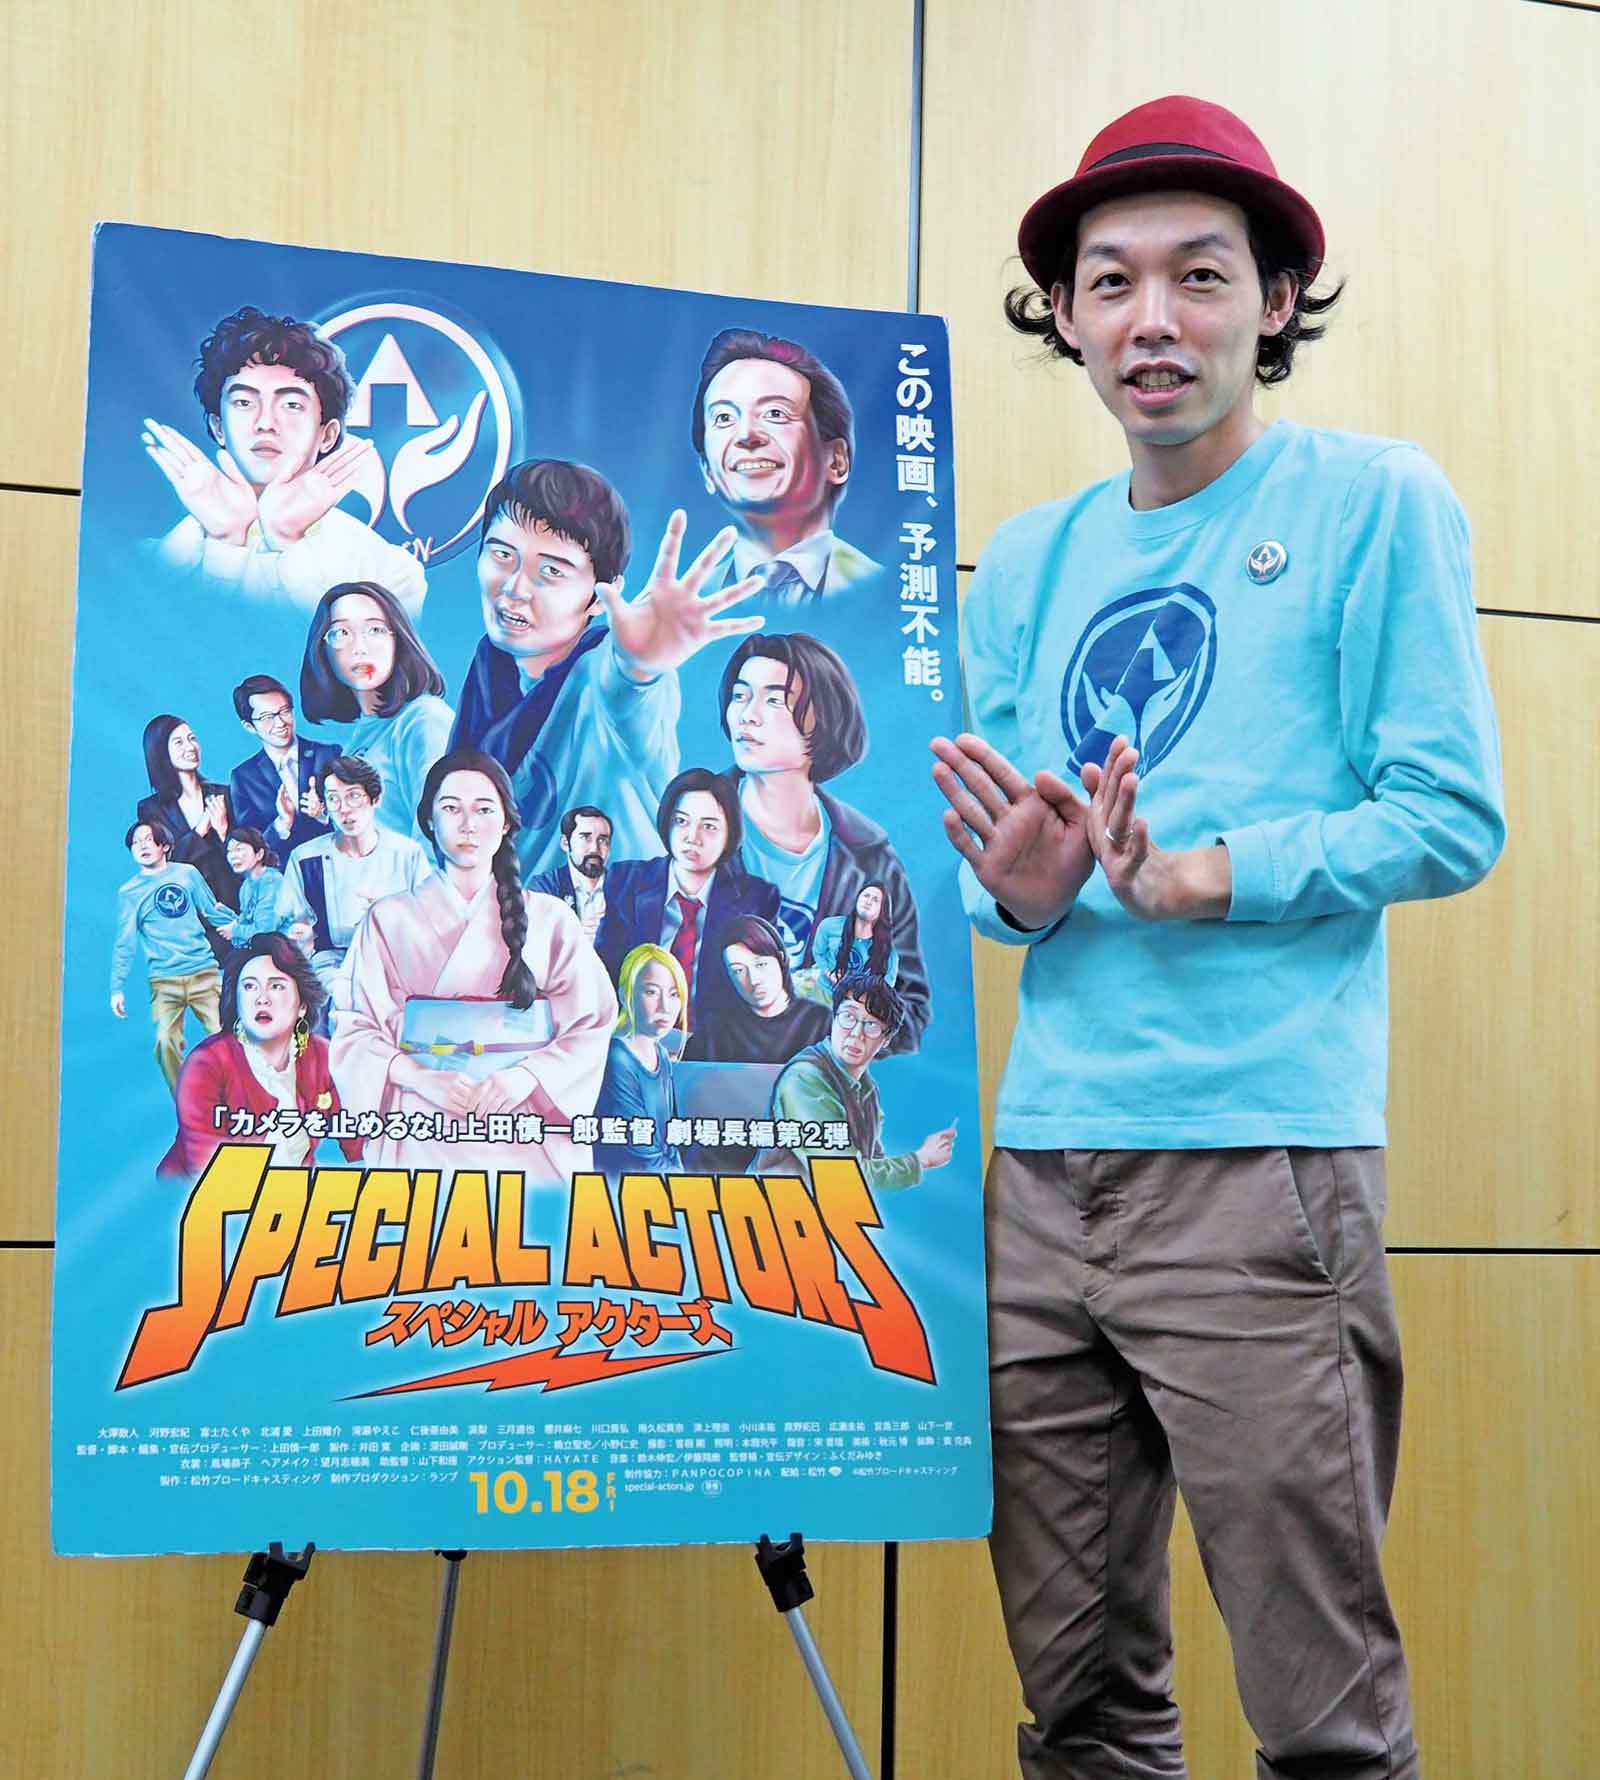 『スペシャルアクターズ』日本版劇場公開ポスターと上田慎一郎監督。このポーズと水色ロングTシャツの意味するところは、映画を見てのお楽しみ。